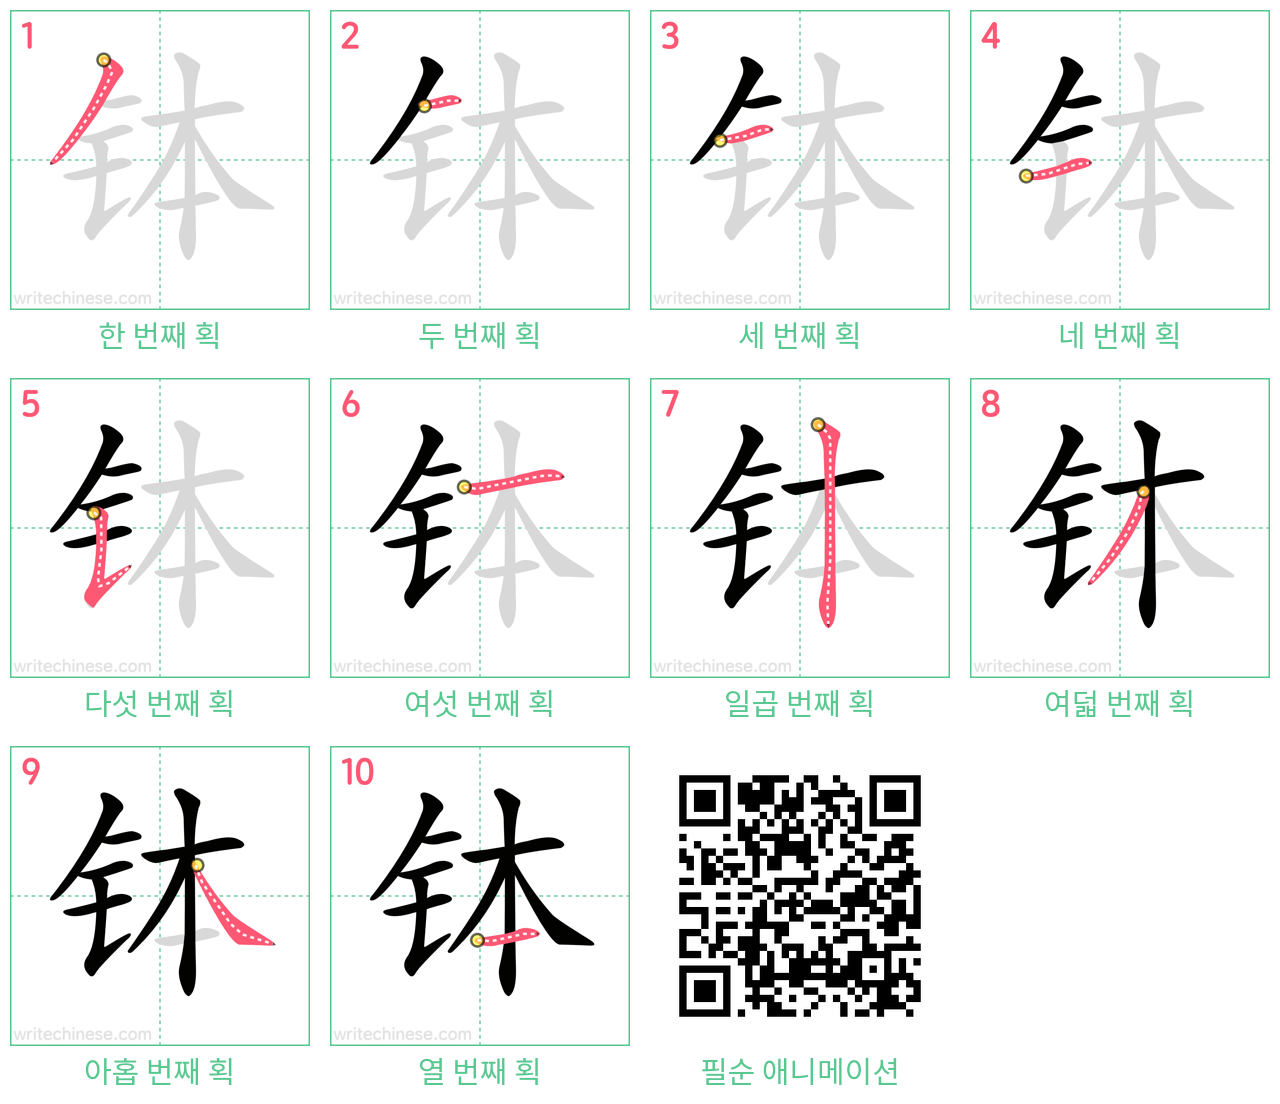 钵 step-by-step stroke order diagrams